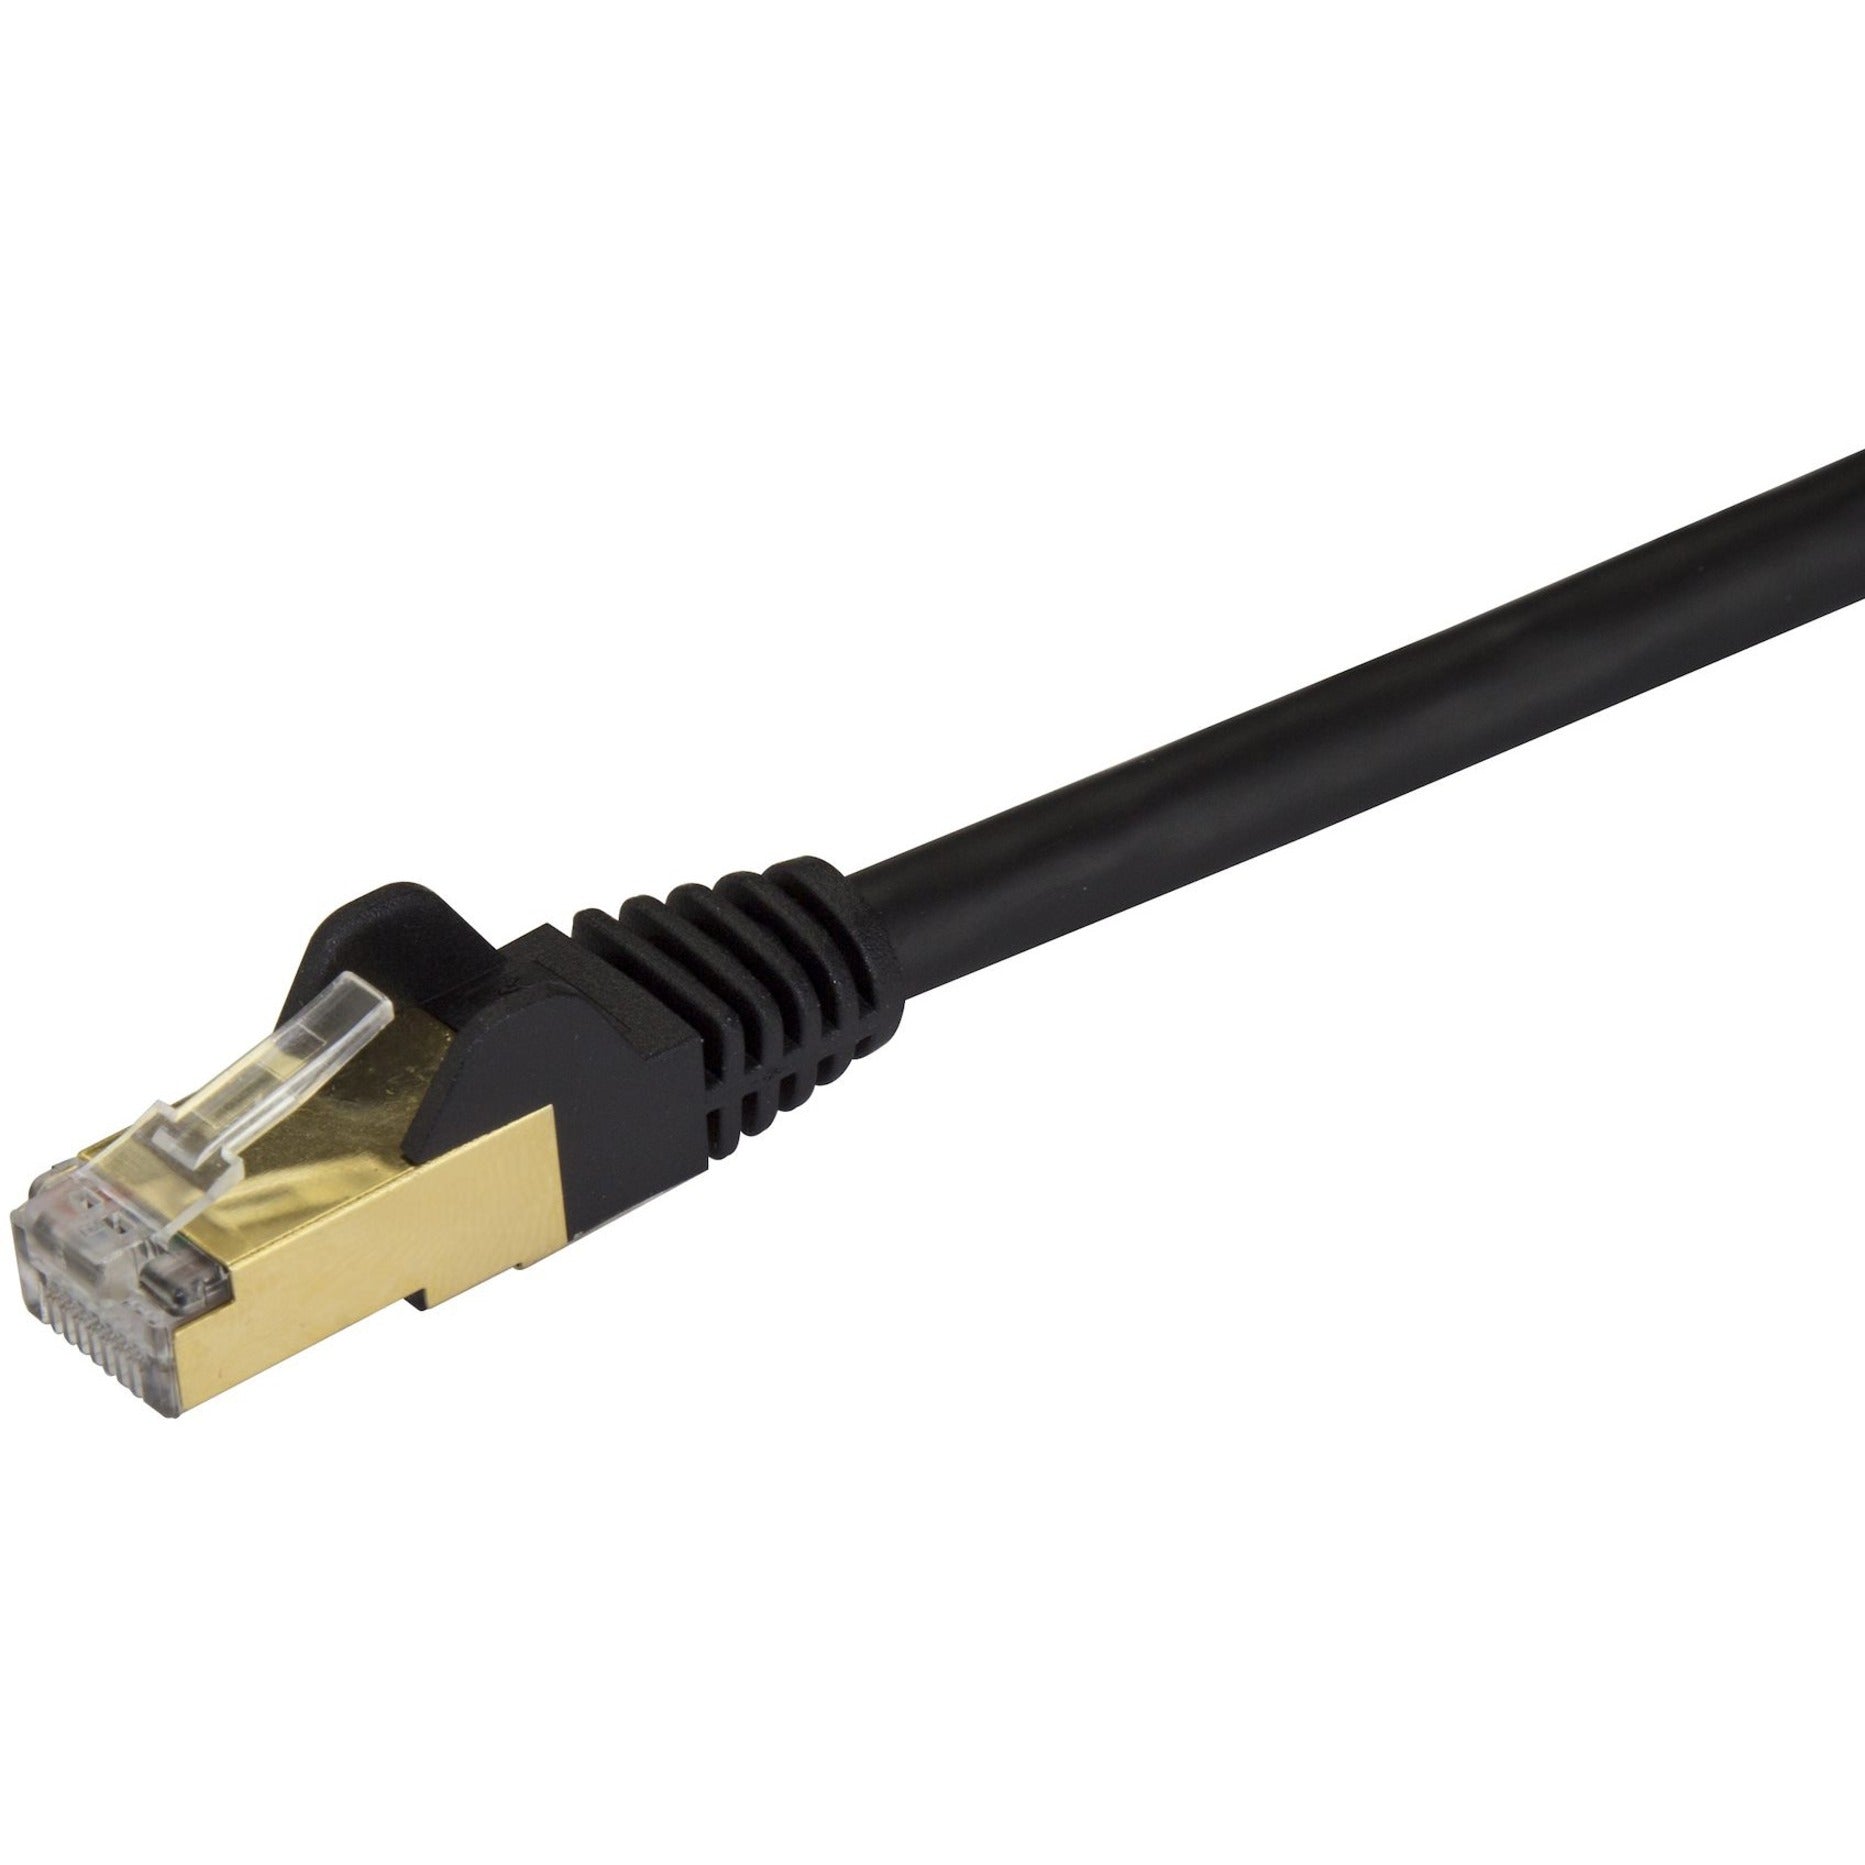 StarTech.com C6ASPAT35BK Cat6a Ethernet Patch Cable - Shielded (STP) - 35 ft., Black, Long Ethernet Cord